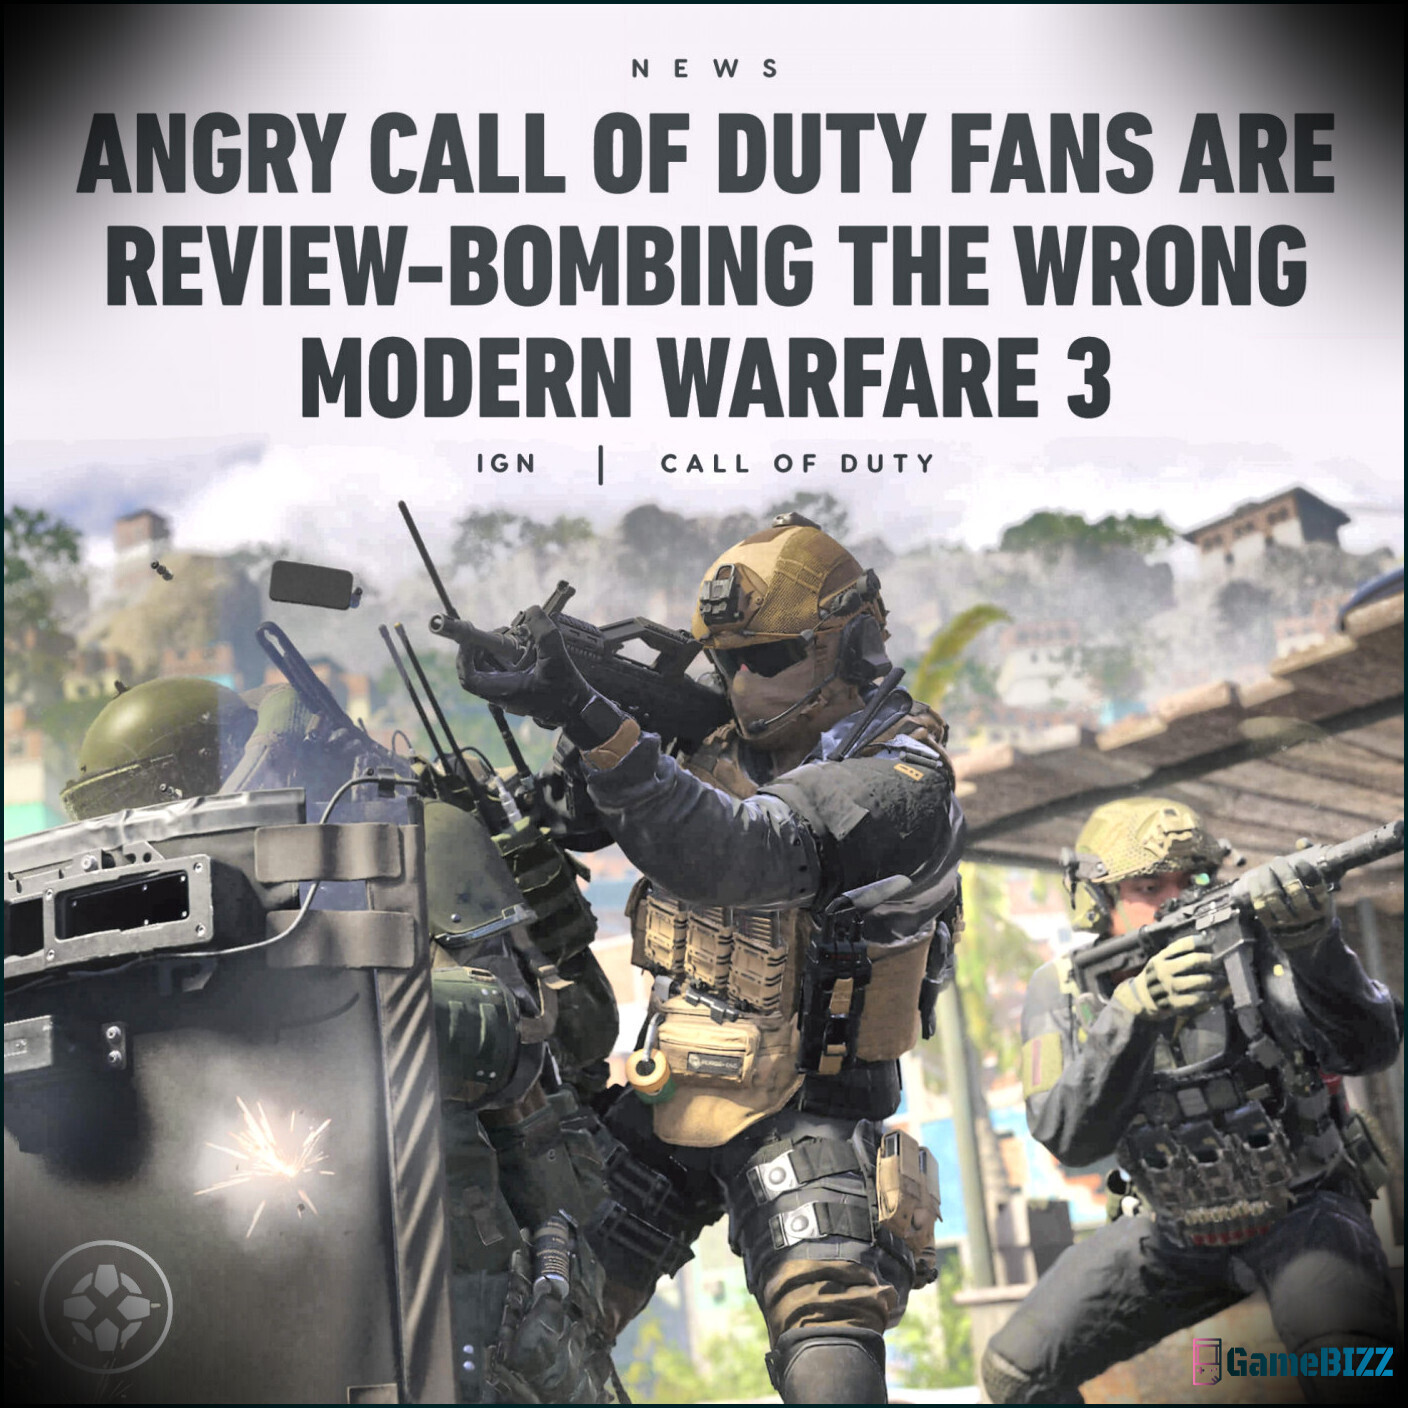 Call of Duty Fans sind verärgert über neue "Extra knusprig" Chicken Gun, Schuld Fortnite